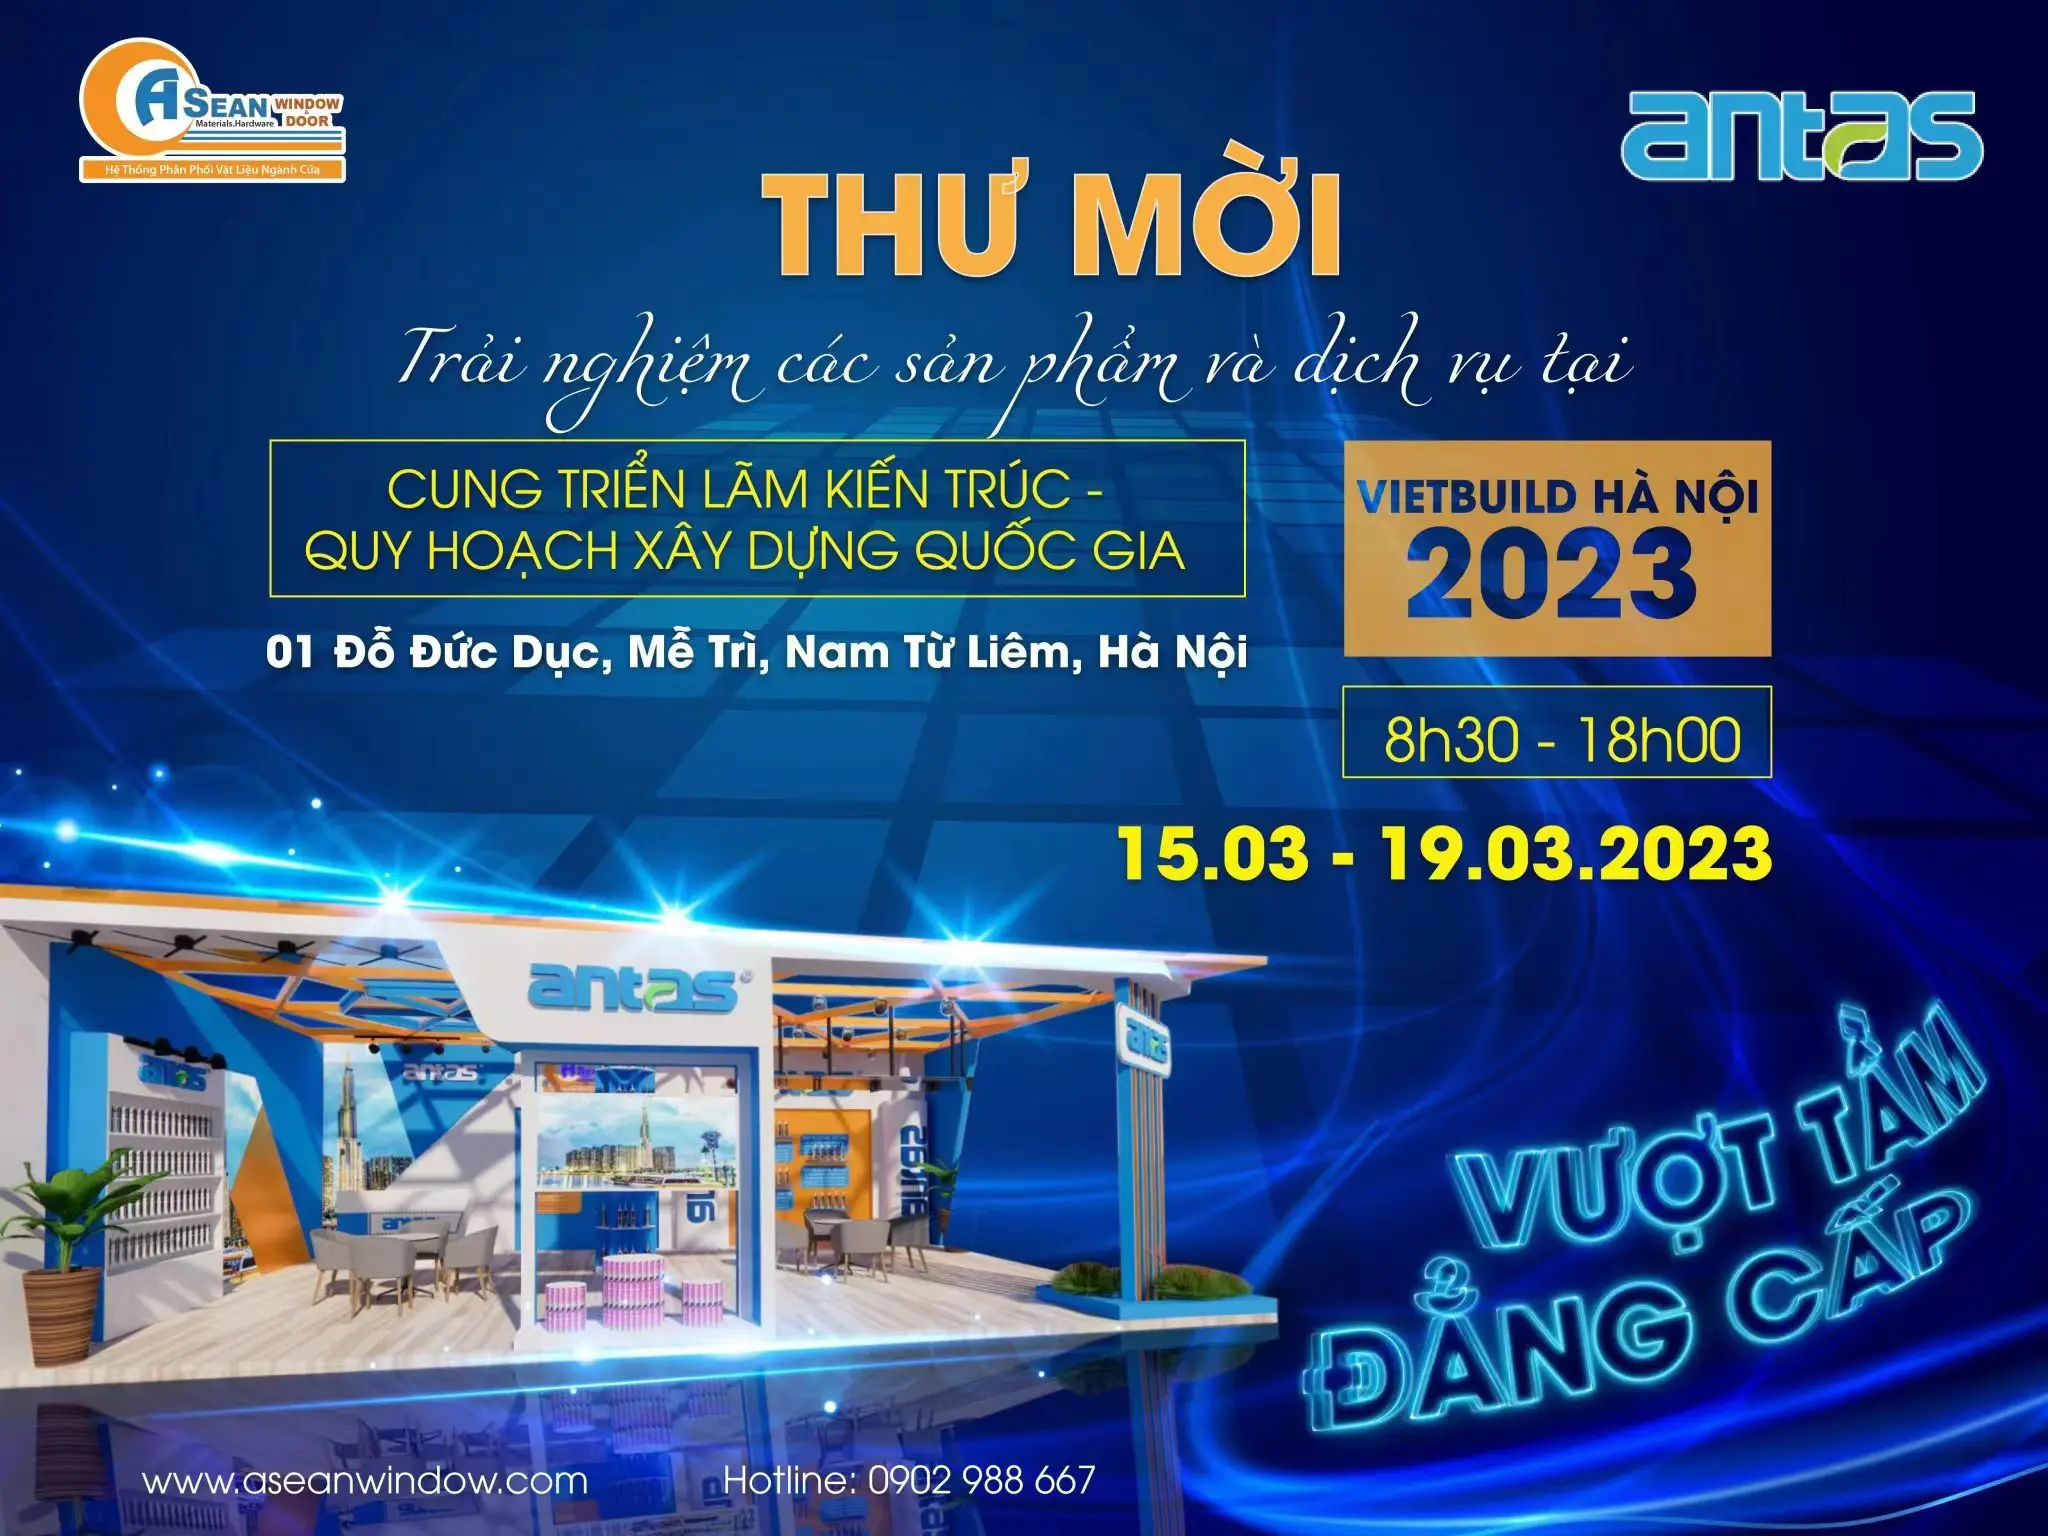 Vietbuild Hanoi 2023 está em andamento | selante antas